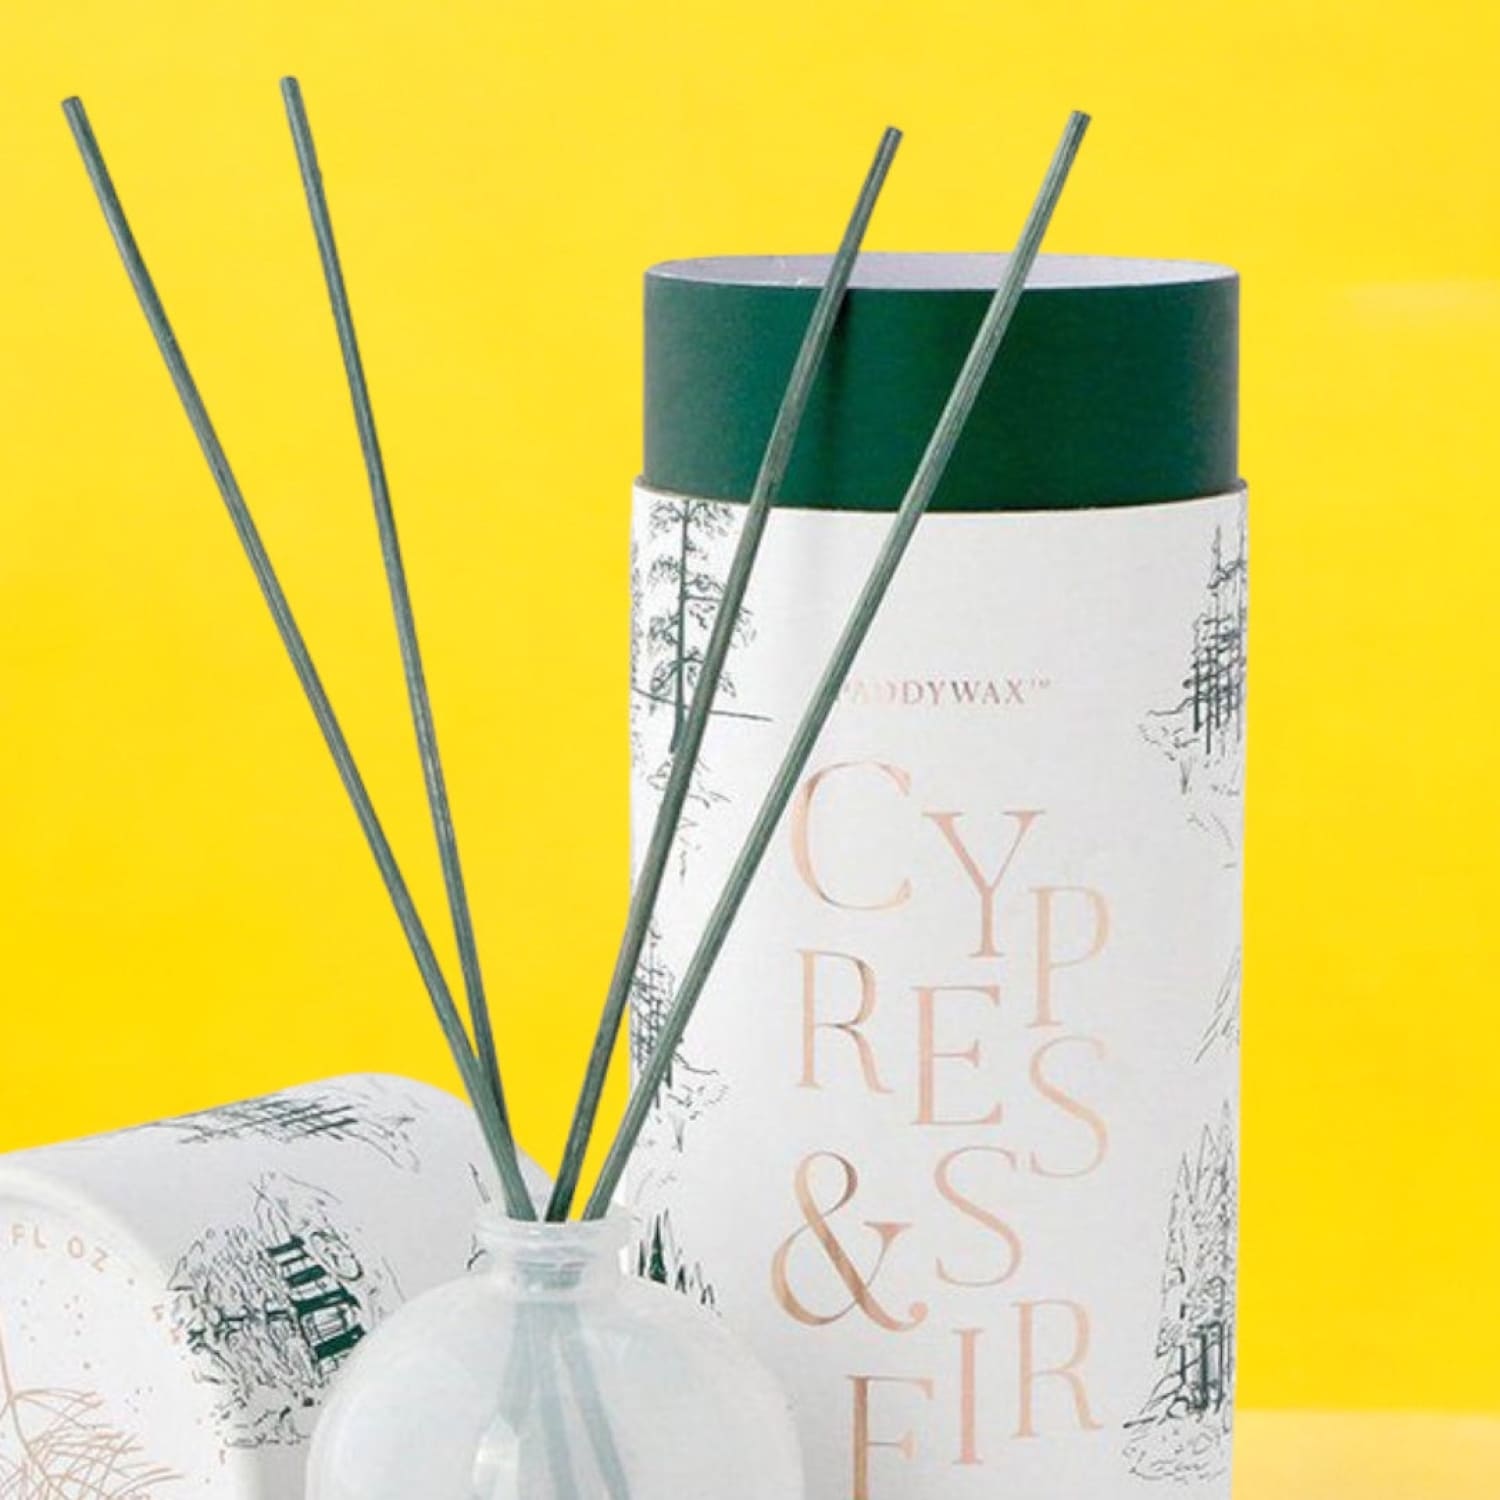 Mini Reed Diffuser - Cypress + Fir Aroma Diffuser - Cypress